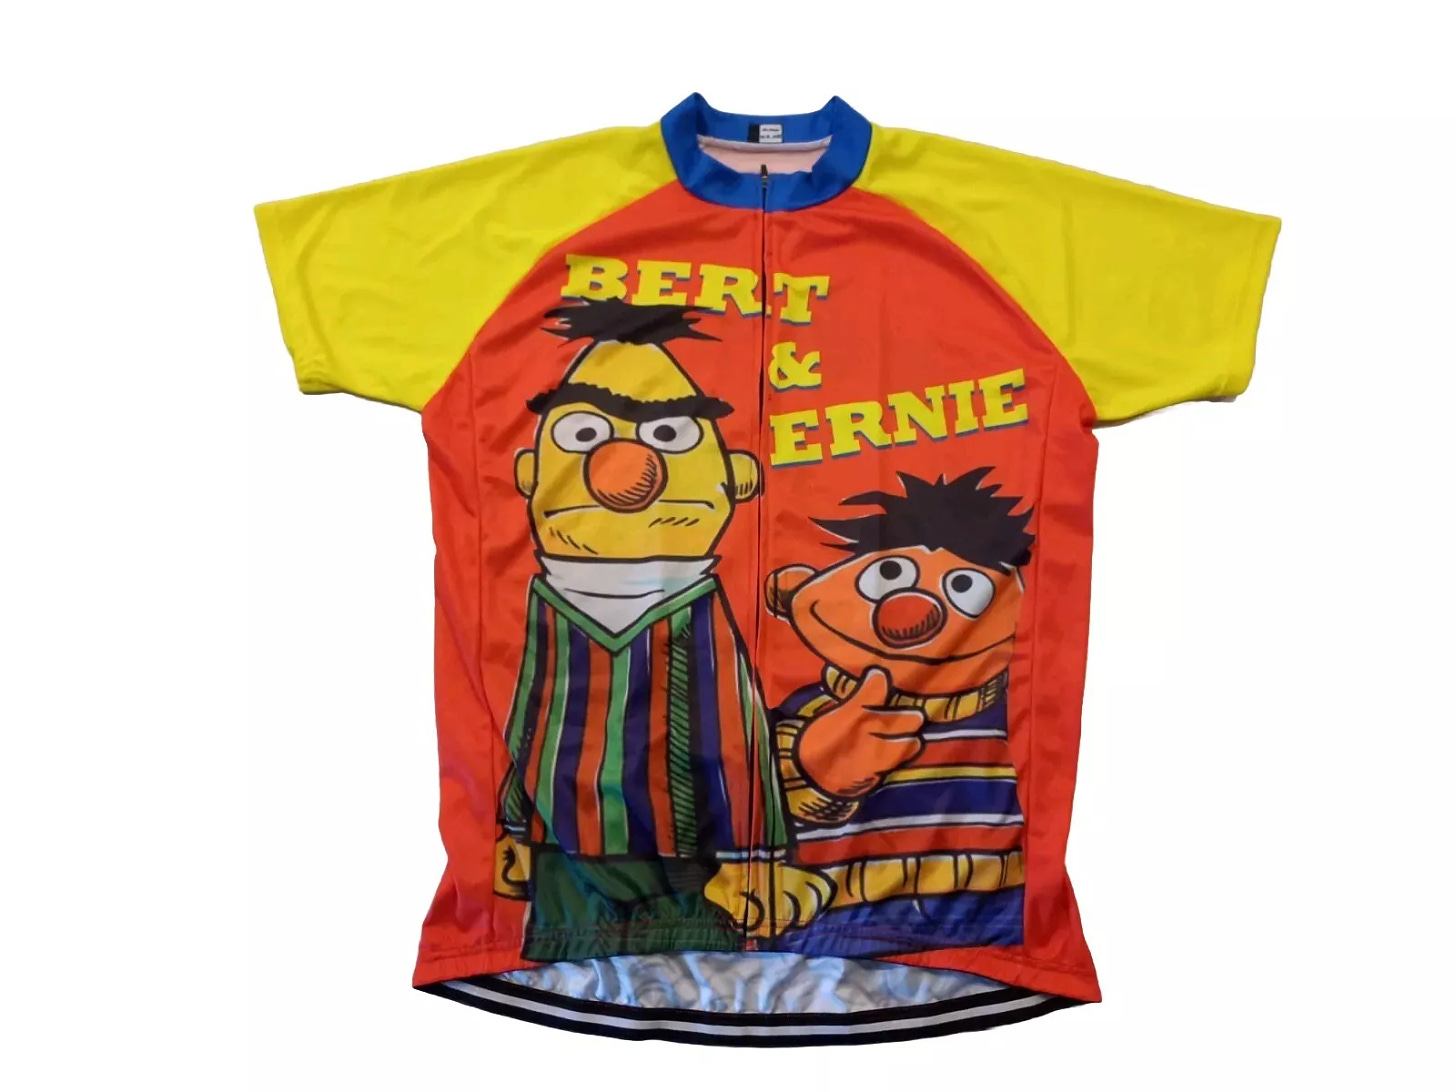 Sesame Street Bert & Ernie Cycling Jersey Shirt Top Size 3XL Muppets - Picture 1 of 8